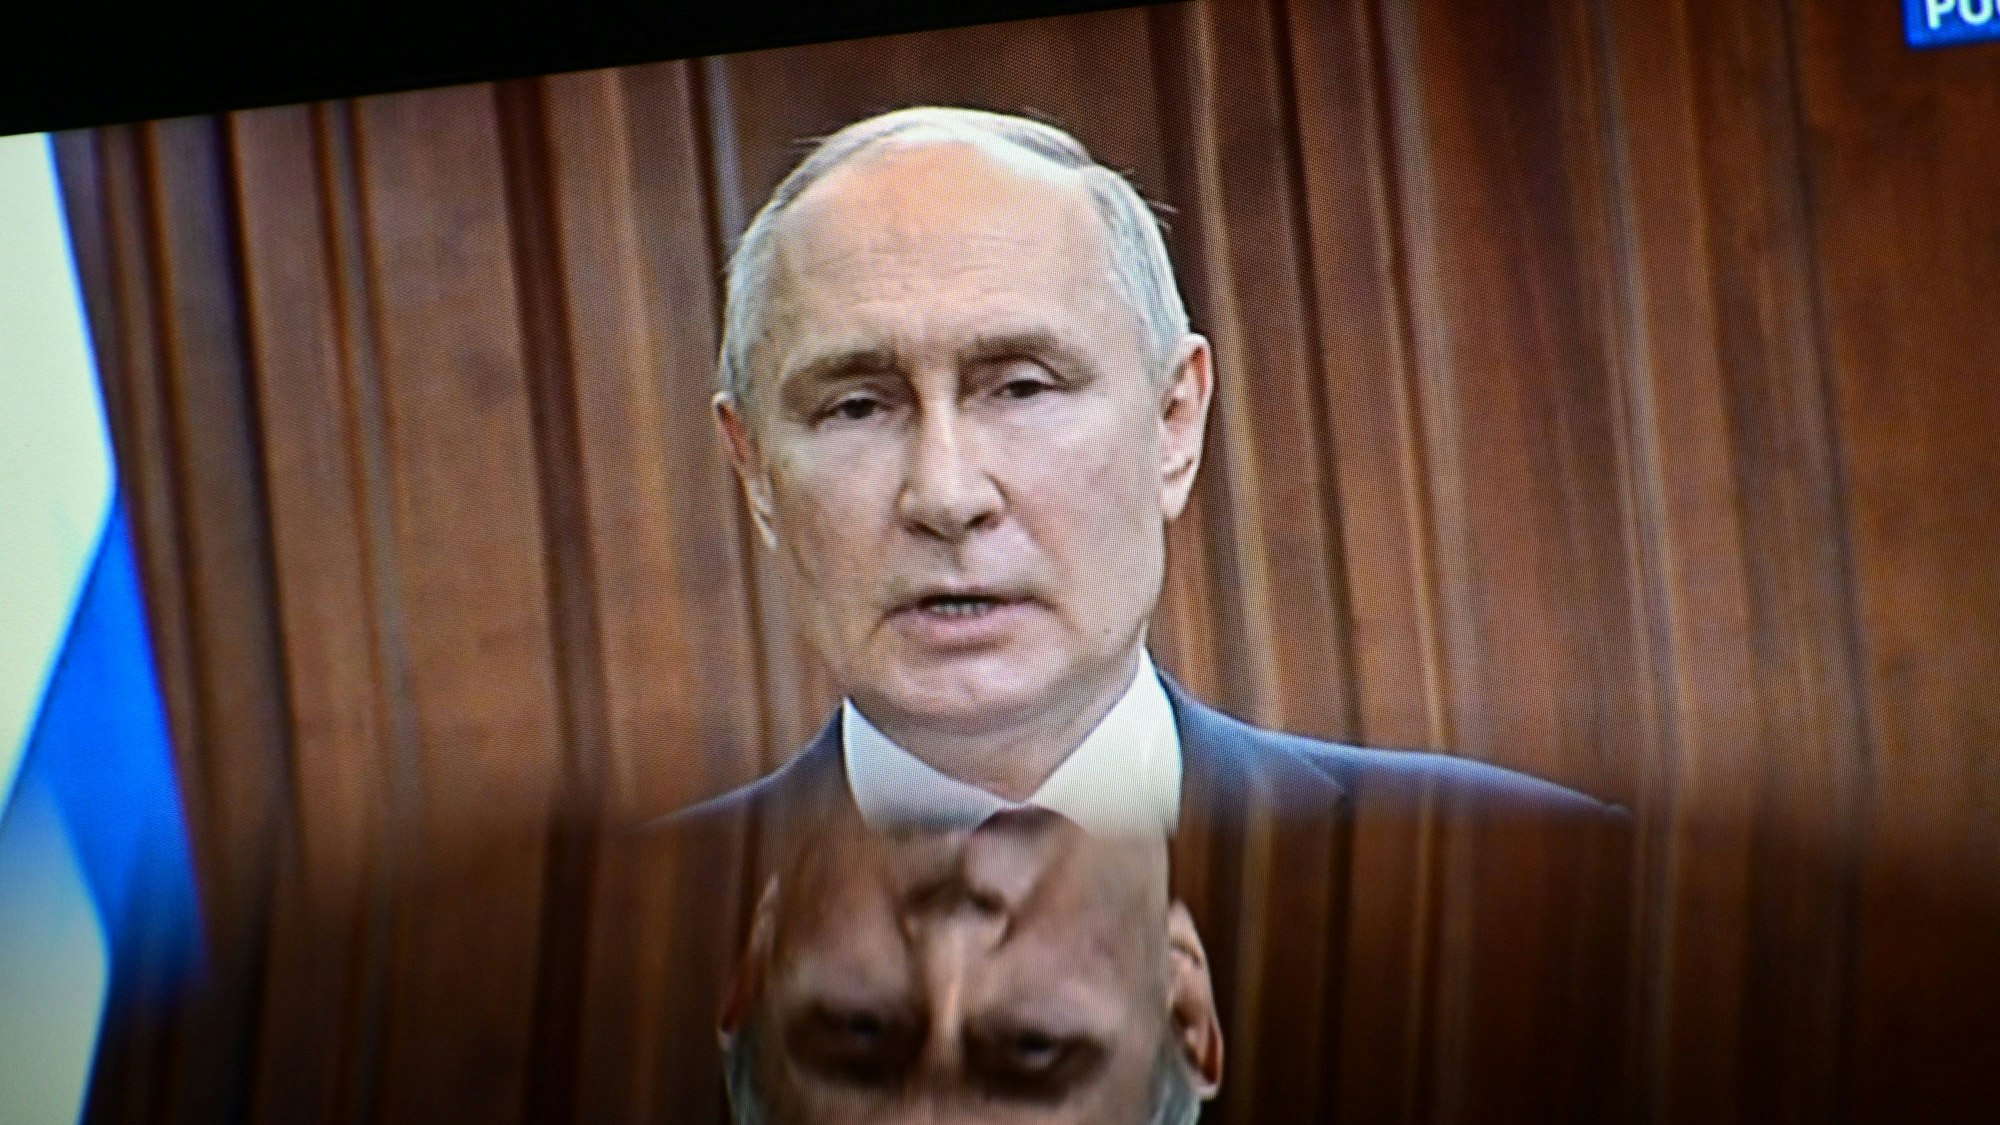 Der russische Präsident Wladimir Putin bei einer Fernsehansprache. Laut einem ehemaligen russischen Wagner-Söldner kamen Befehle für Gräueltaten in der Ukraine direkt aus dem Büro des Kremlchefs. (Archivbild)